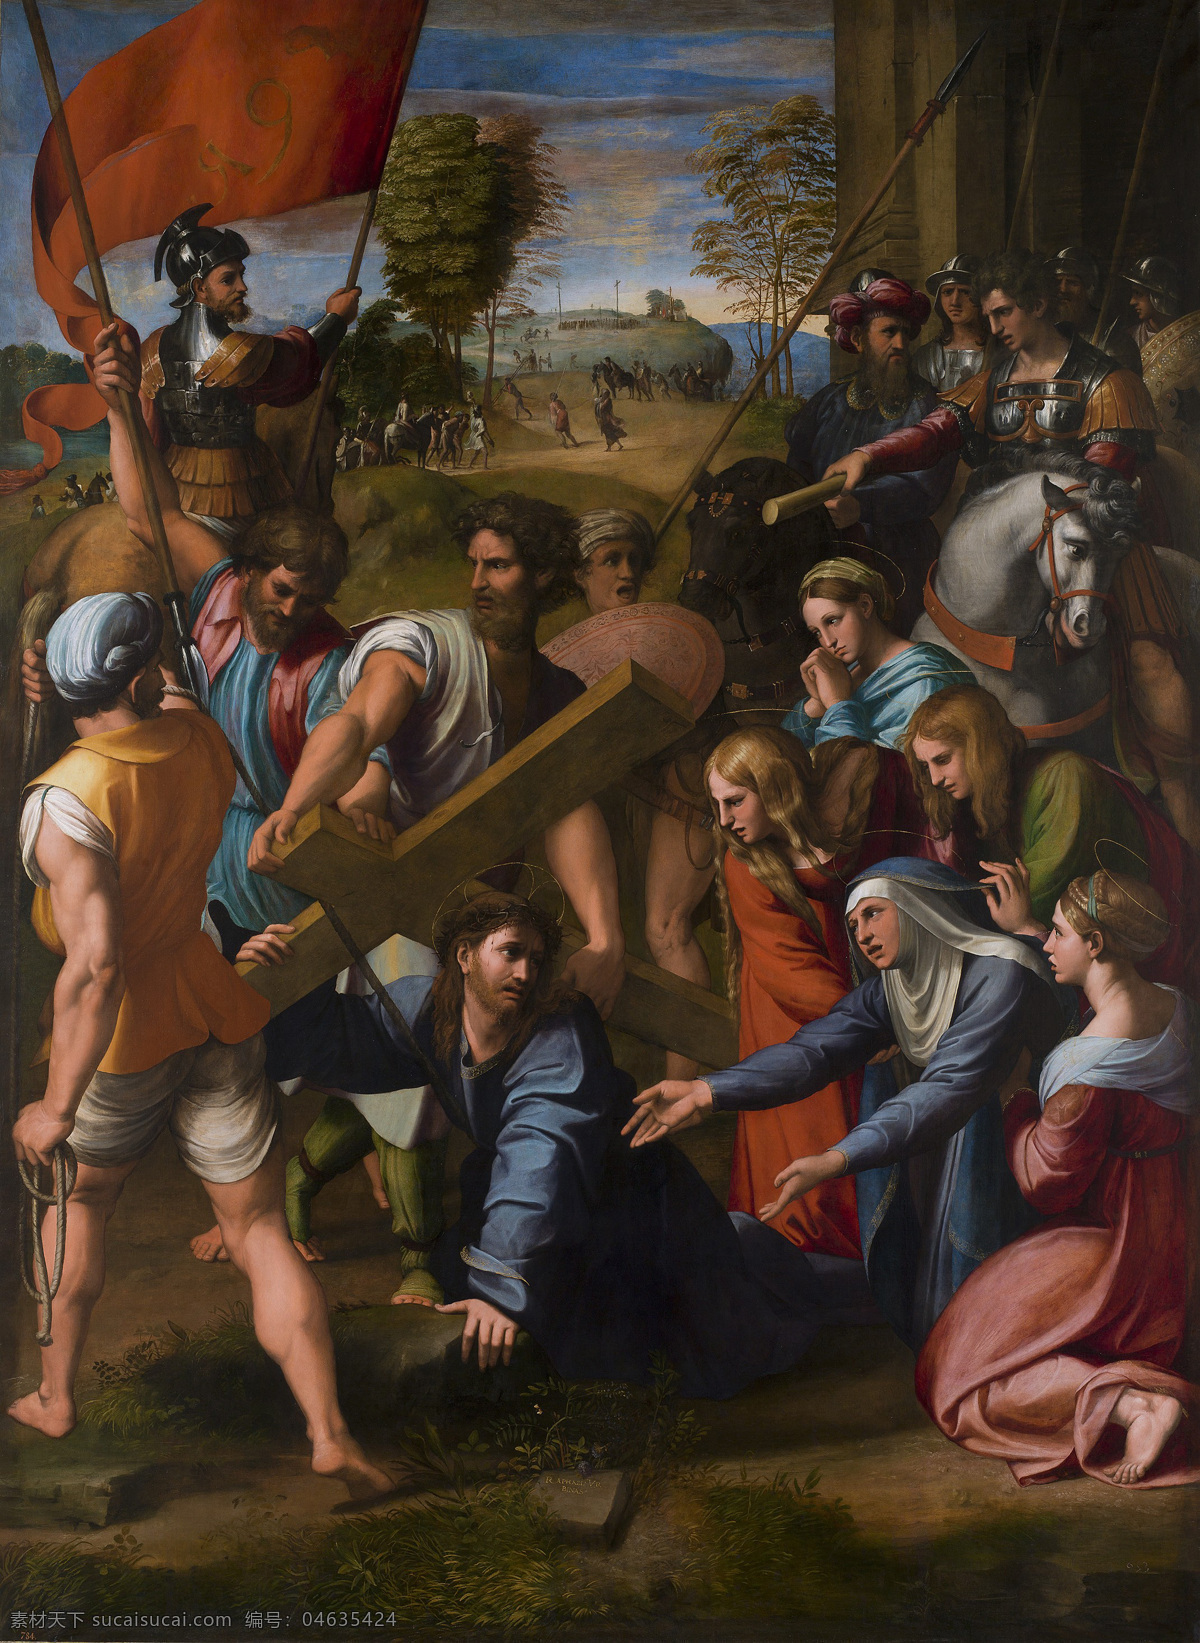 拉斐尔作品 拉斐尔桑西 基督教 十字架 文艺复兴时期 意大利画家 耶稣基督 普拉多 新约 拉斐尔 宗教艺术 游行 绘画书法 文化艺术